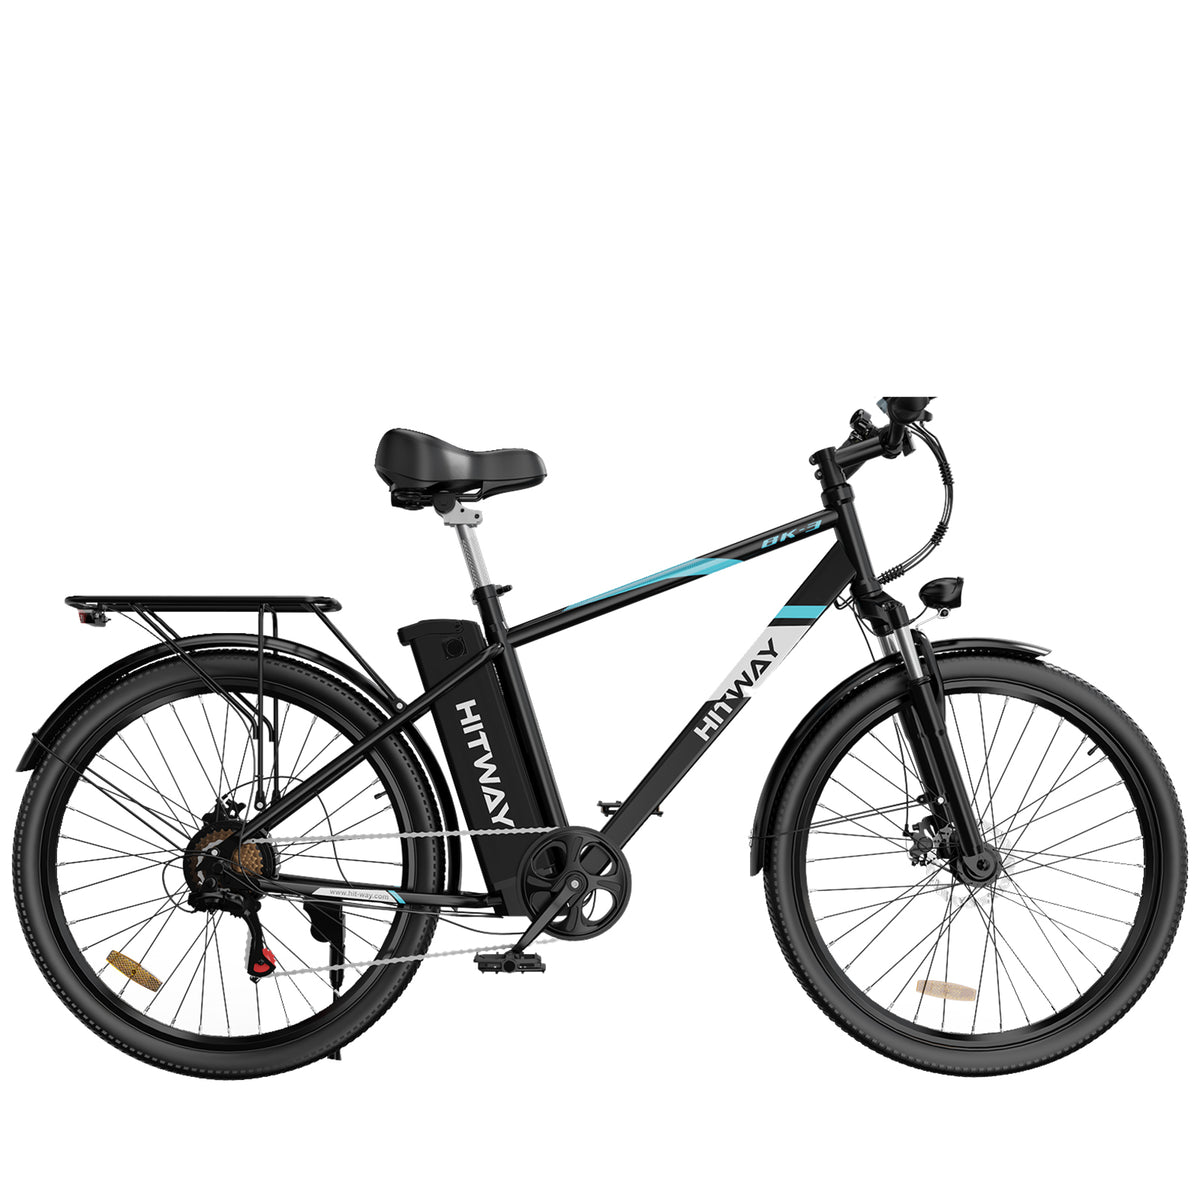 Candado ewheel para bicicletas y patinetes eléctricos 112cm